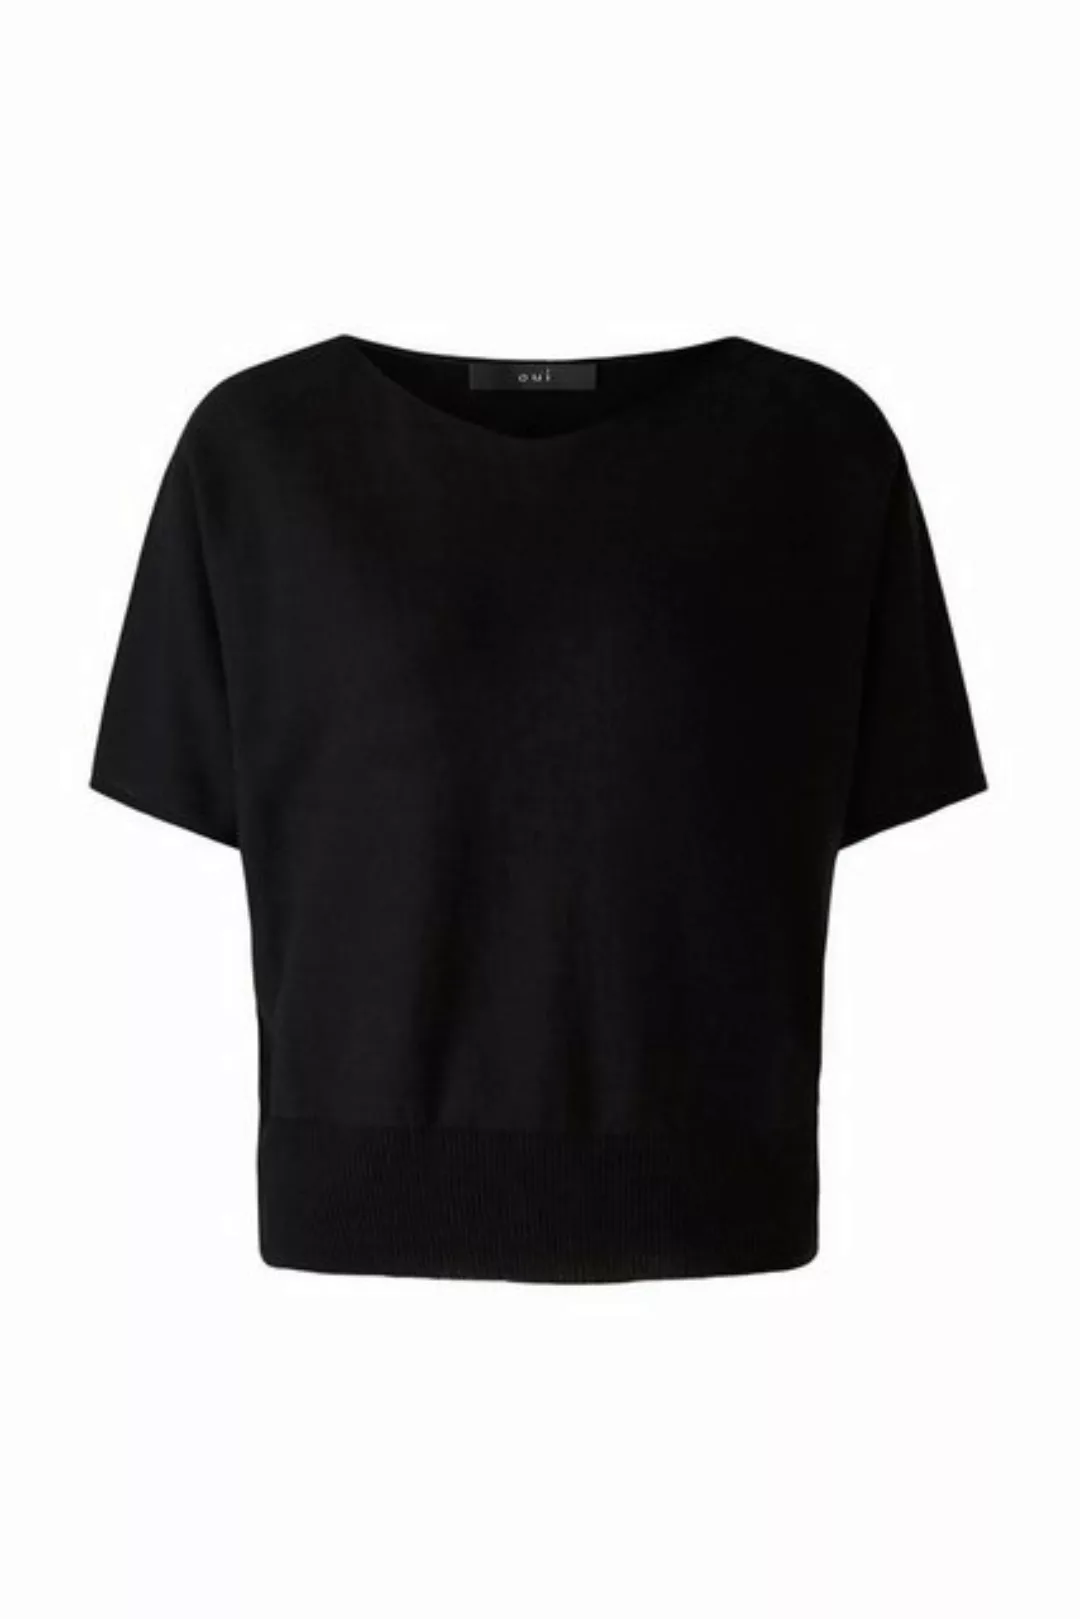 Oui Sweatshirt Pullover, black günstig online kaufen